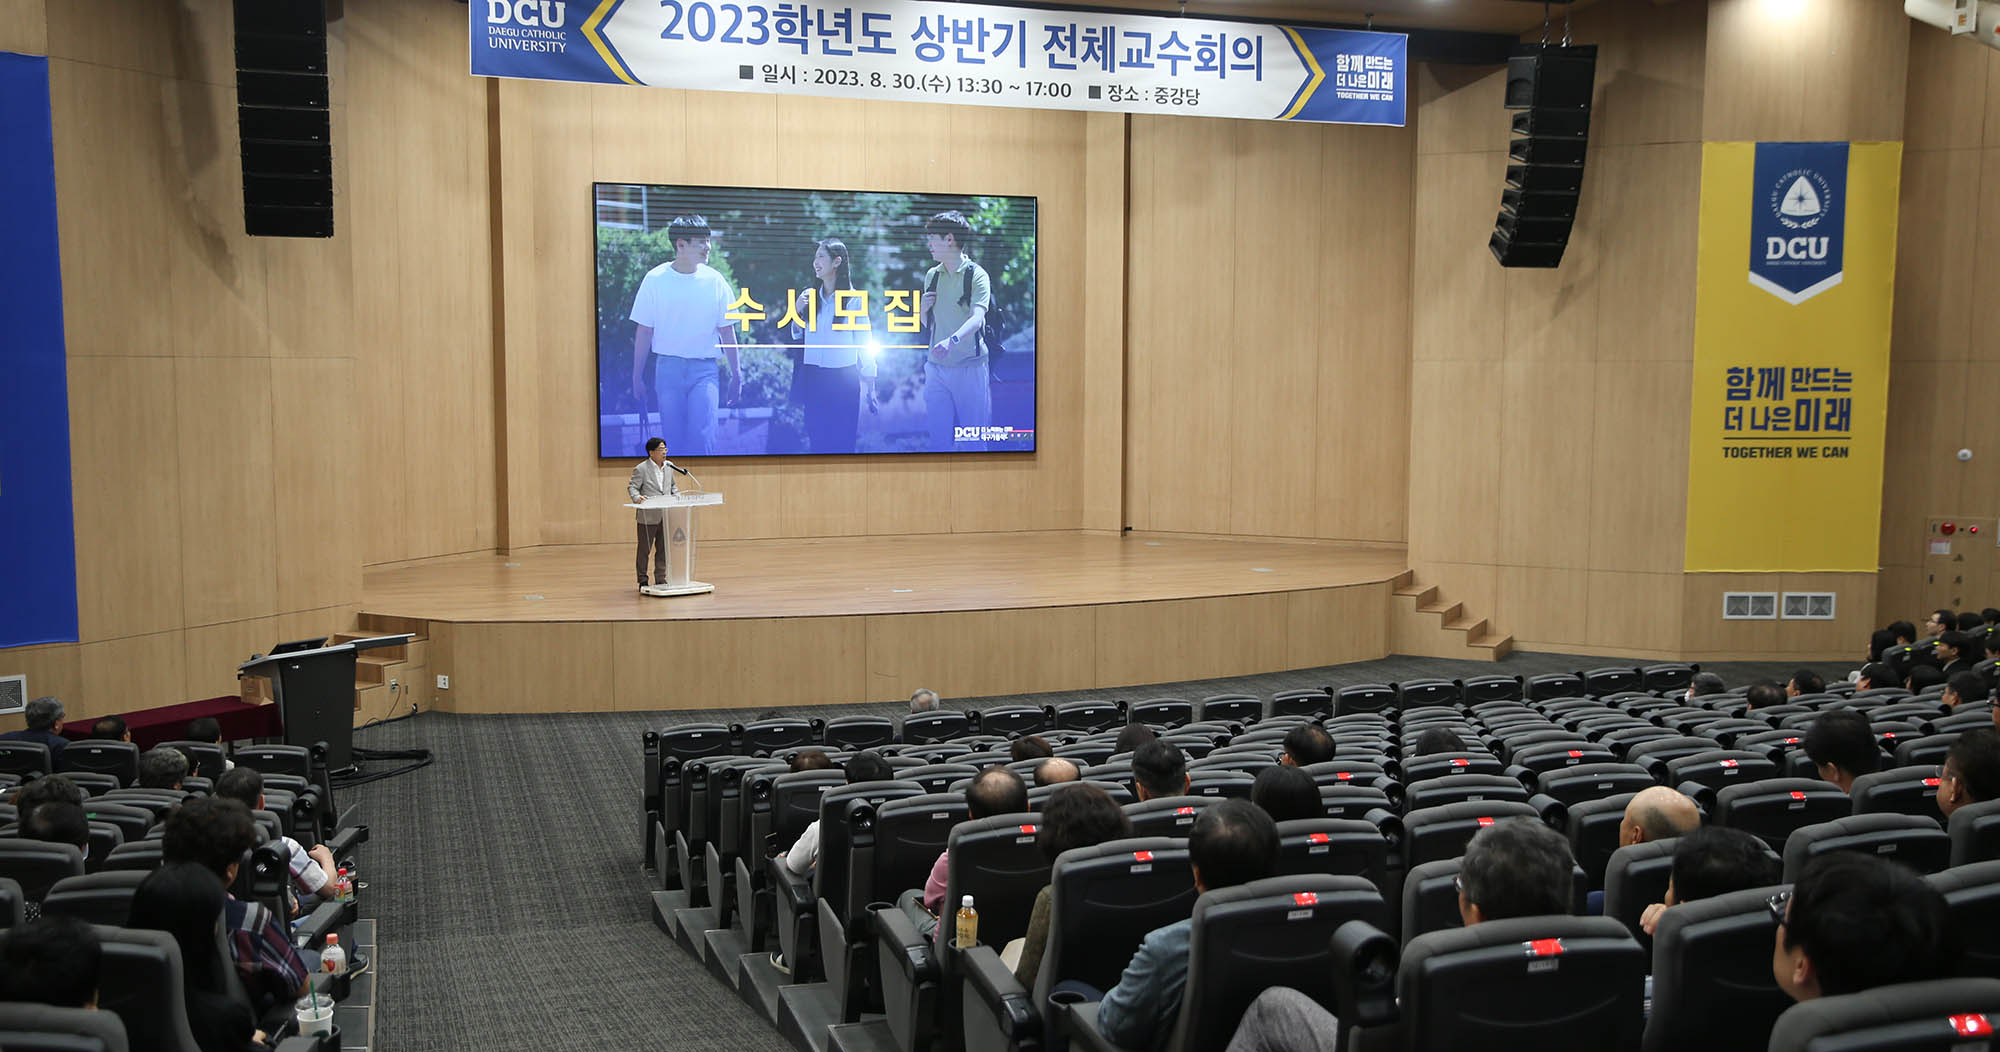 2023학년도 상반기 전체교수회의 개최